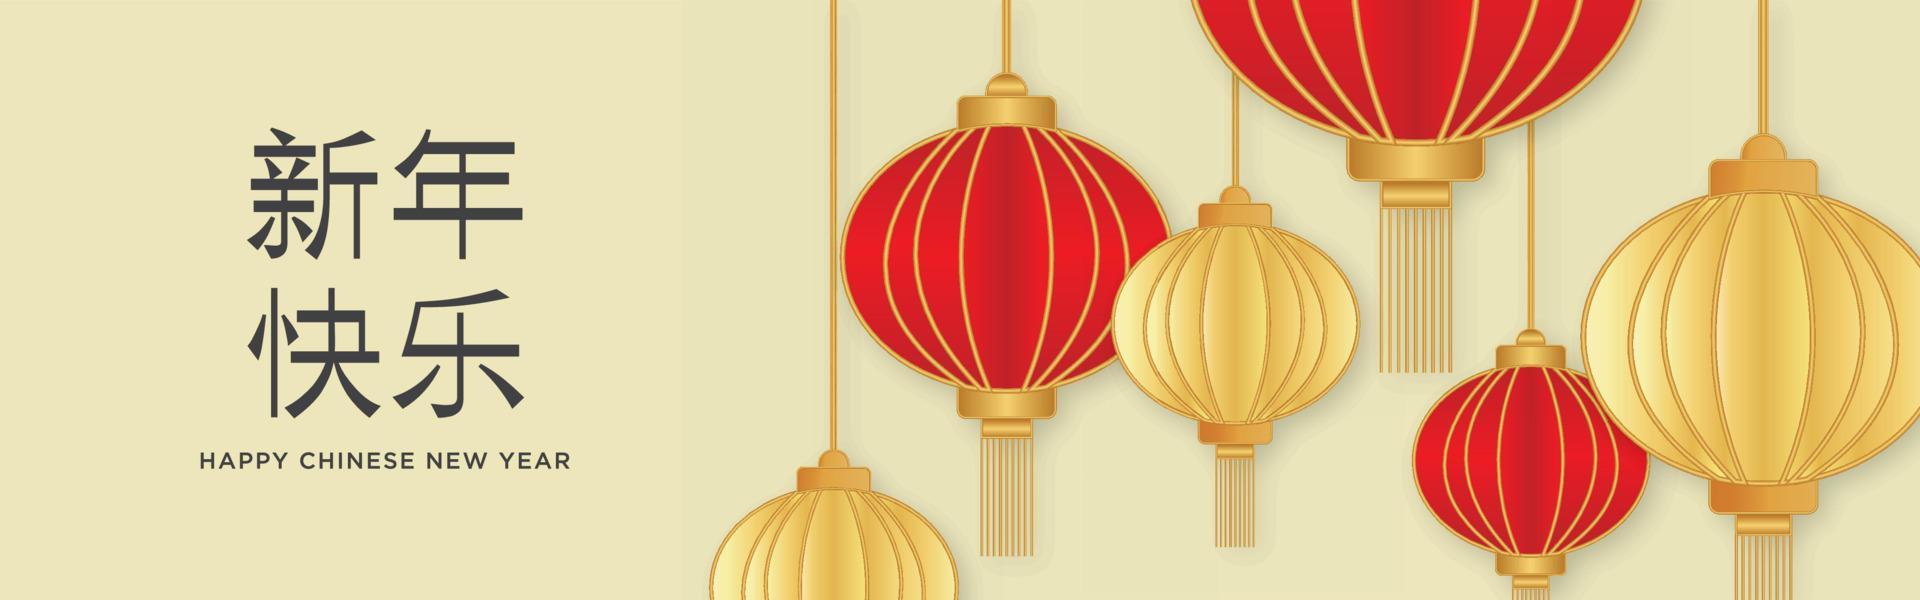 feliz año nuevo chino banner horizontal vector